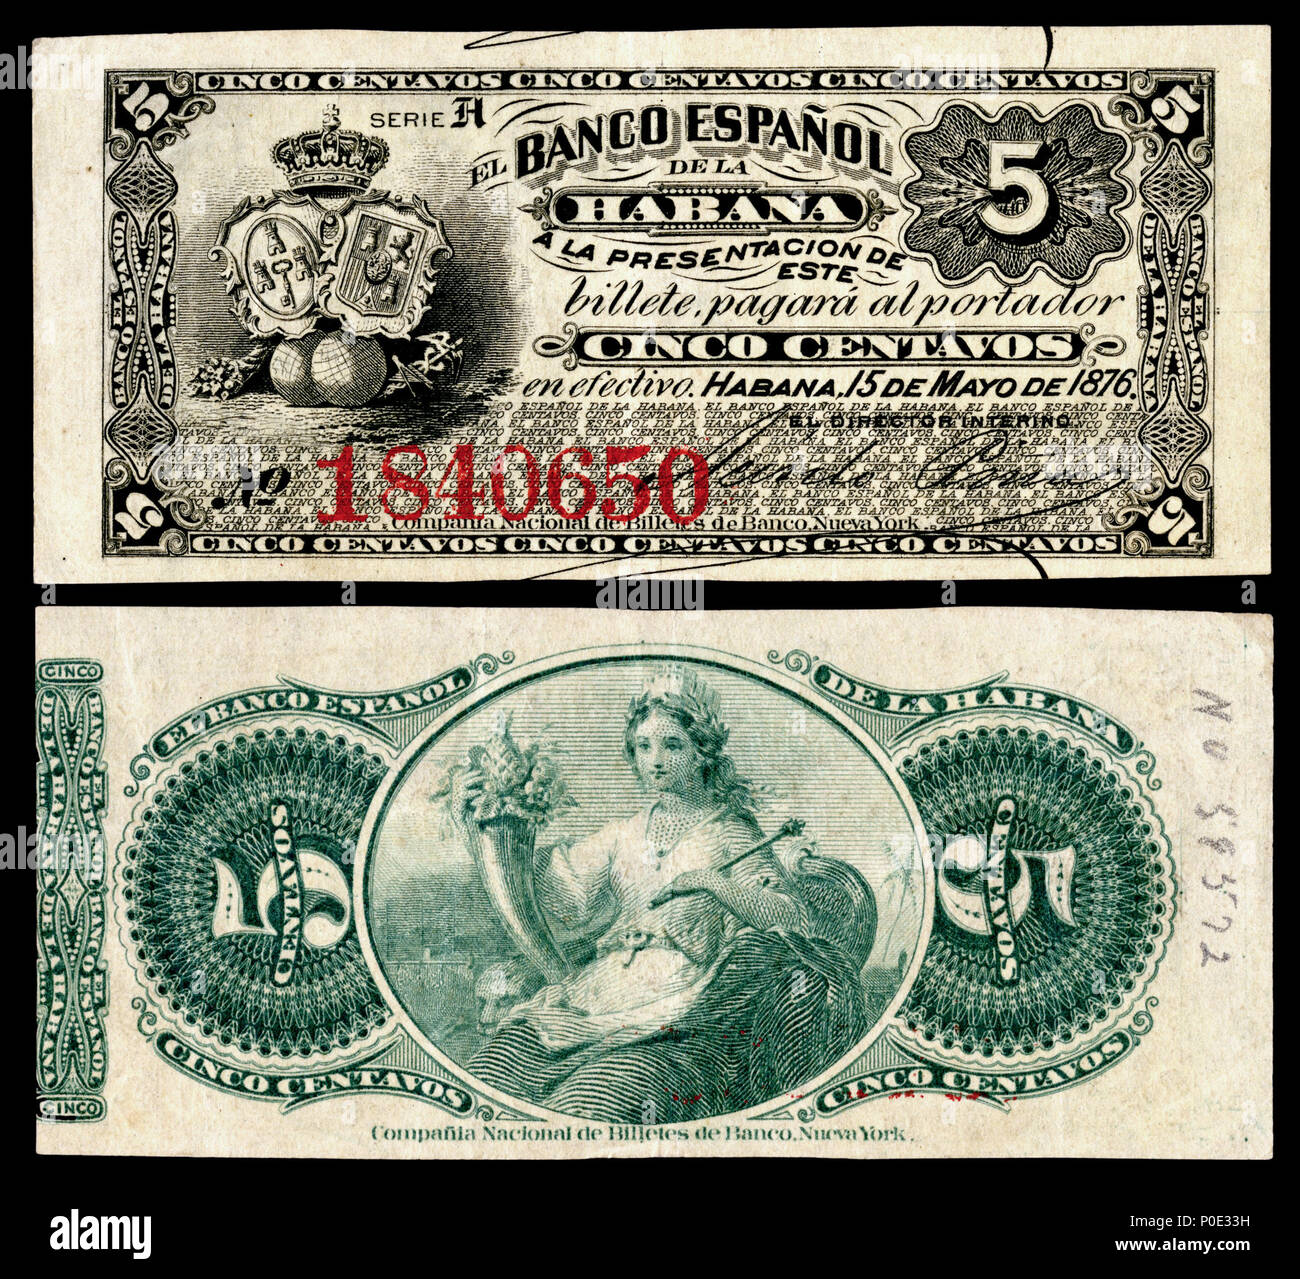 Englisch: El Banco Espanol de la Isla de Cuba, 5 Centavos (1896)  eingraviert und von der American Bank Note Company, New York, gedruckt.  1896 (Hinweis), 2015 (Bild). American Bank Note Company